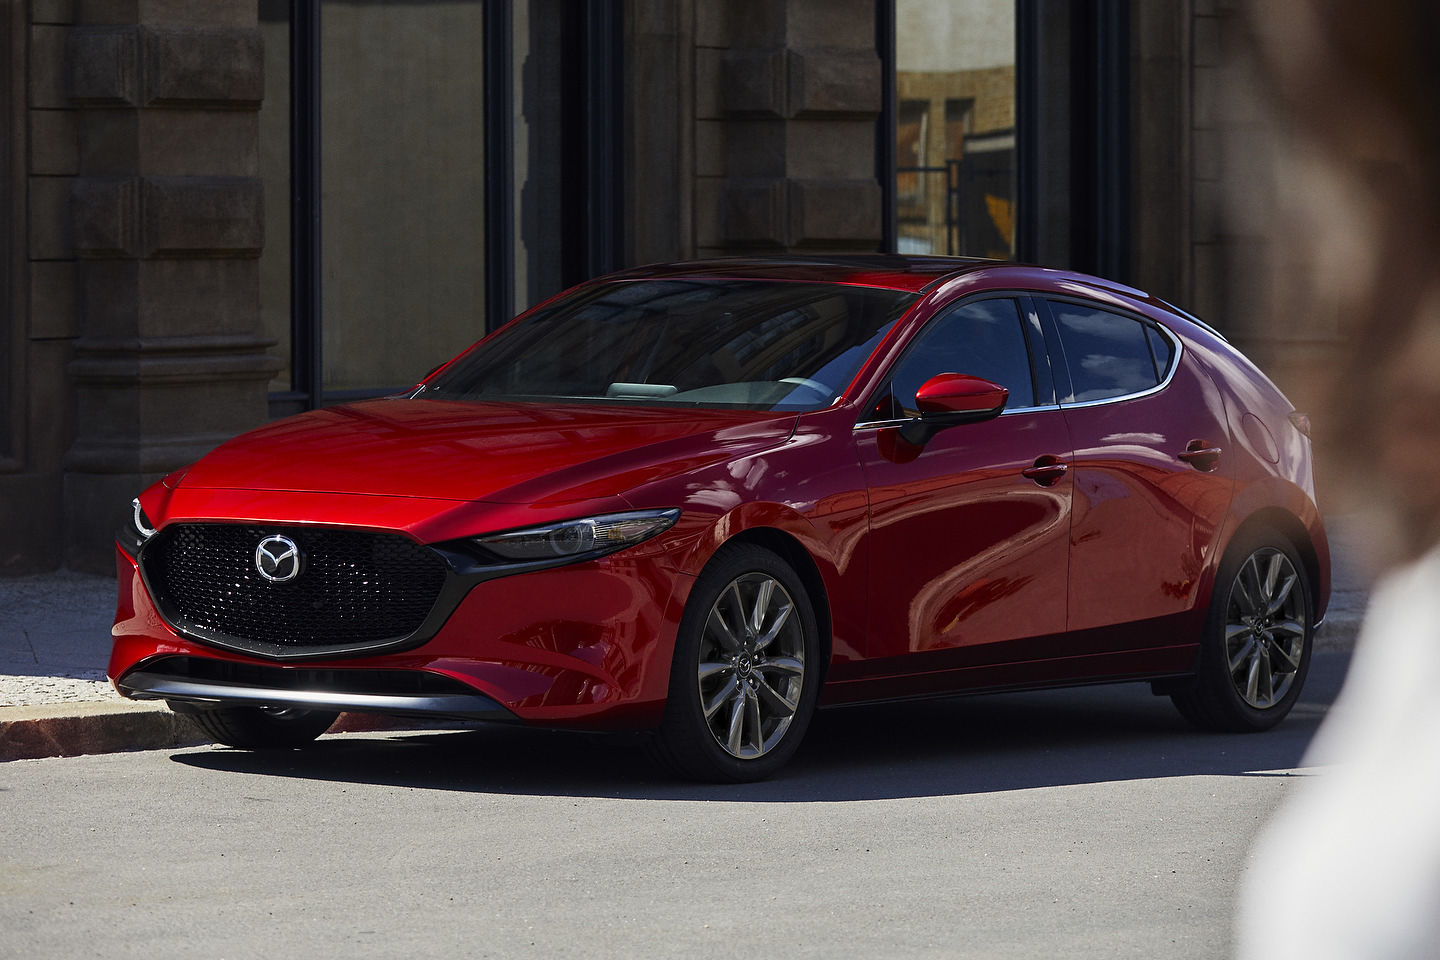 Trois choses à savoir sur la nouvelle Mazda3 2019 à traction intégrale i-ACTIV